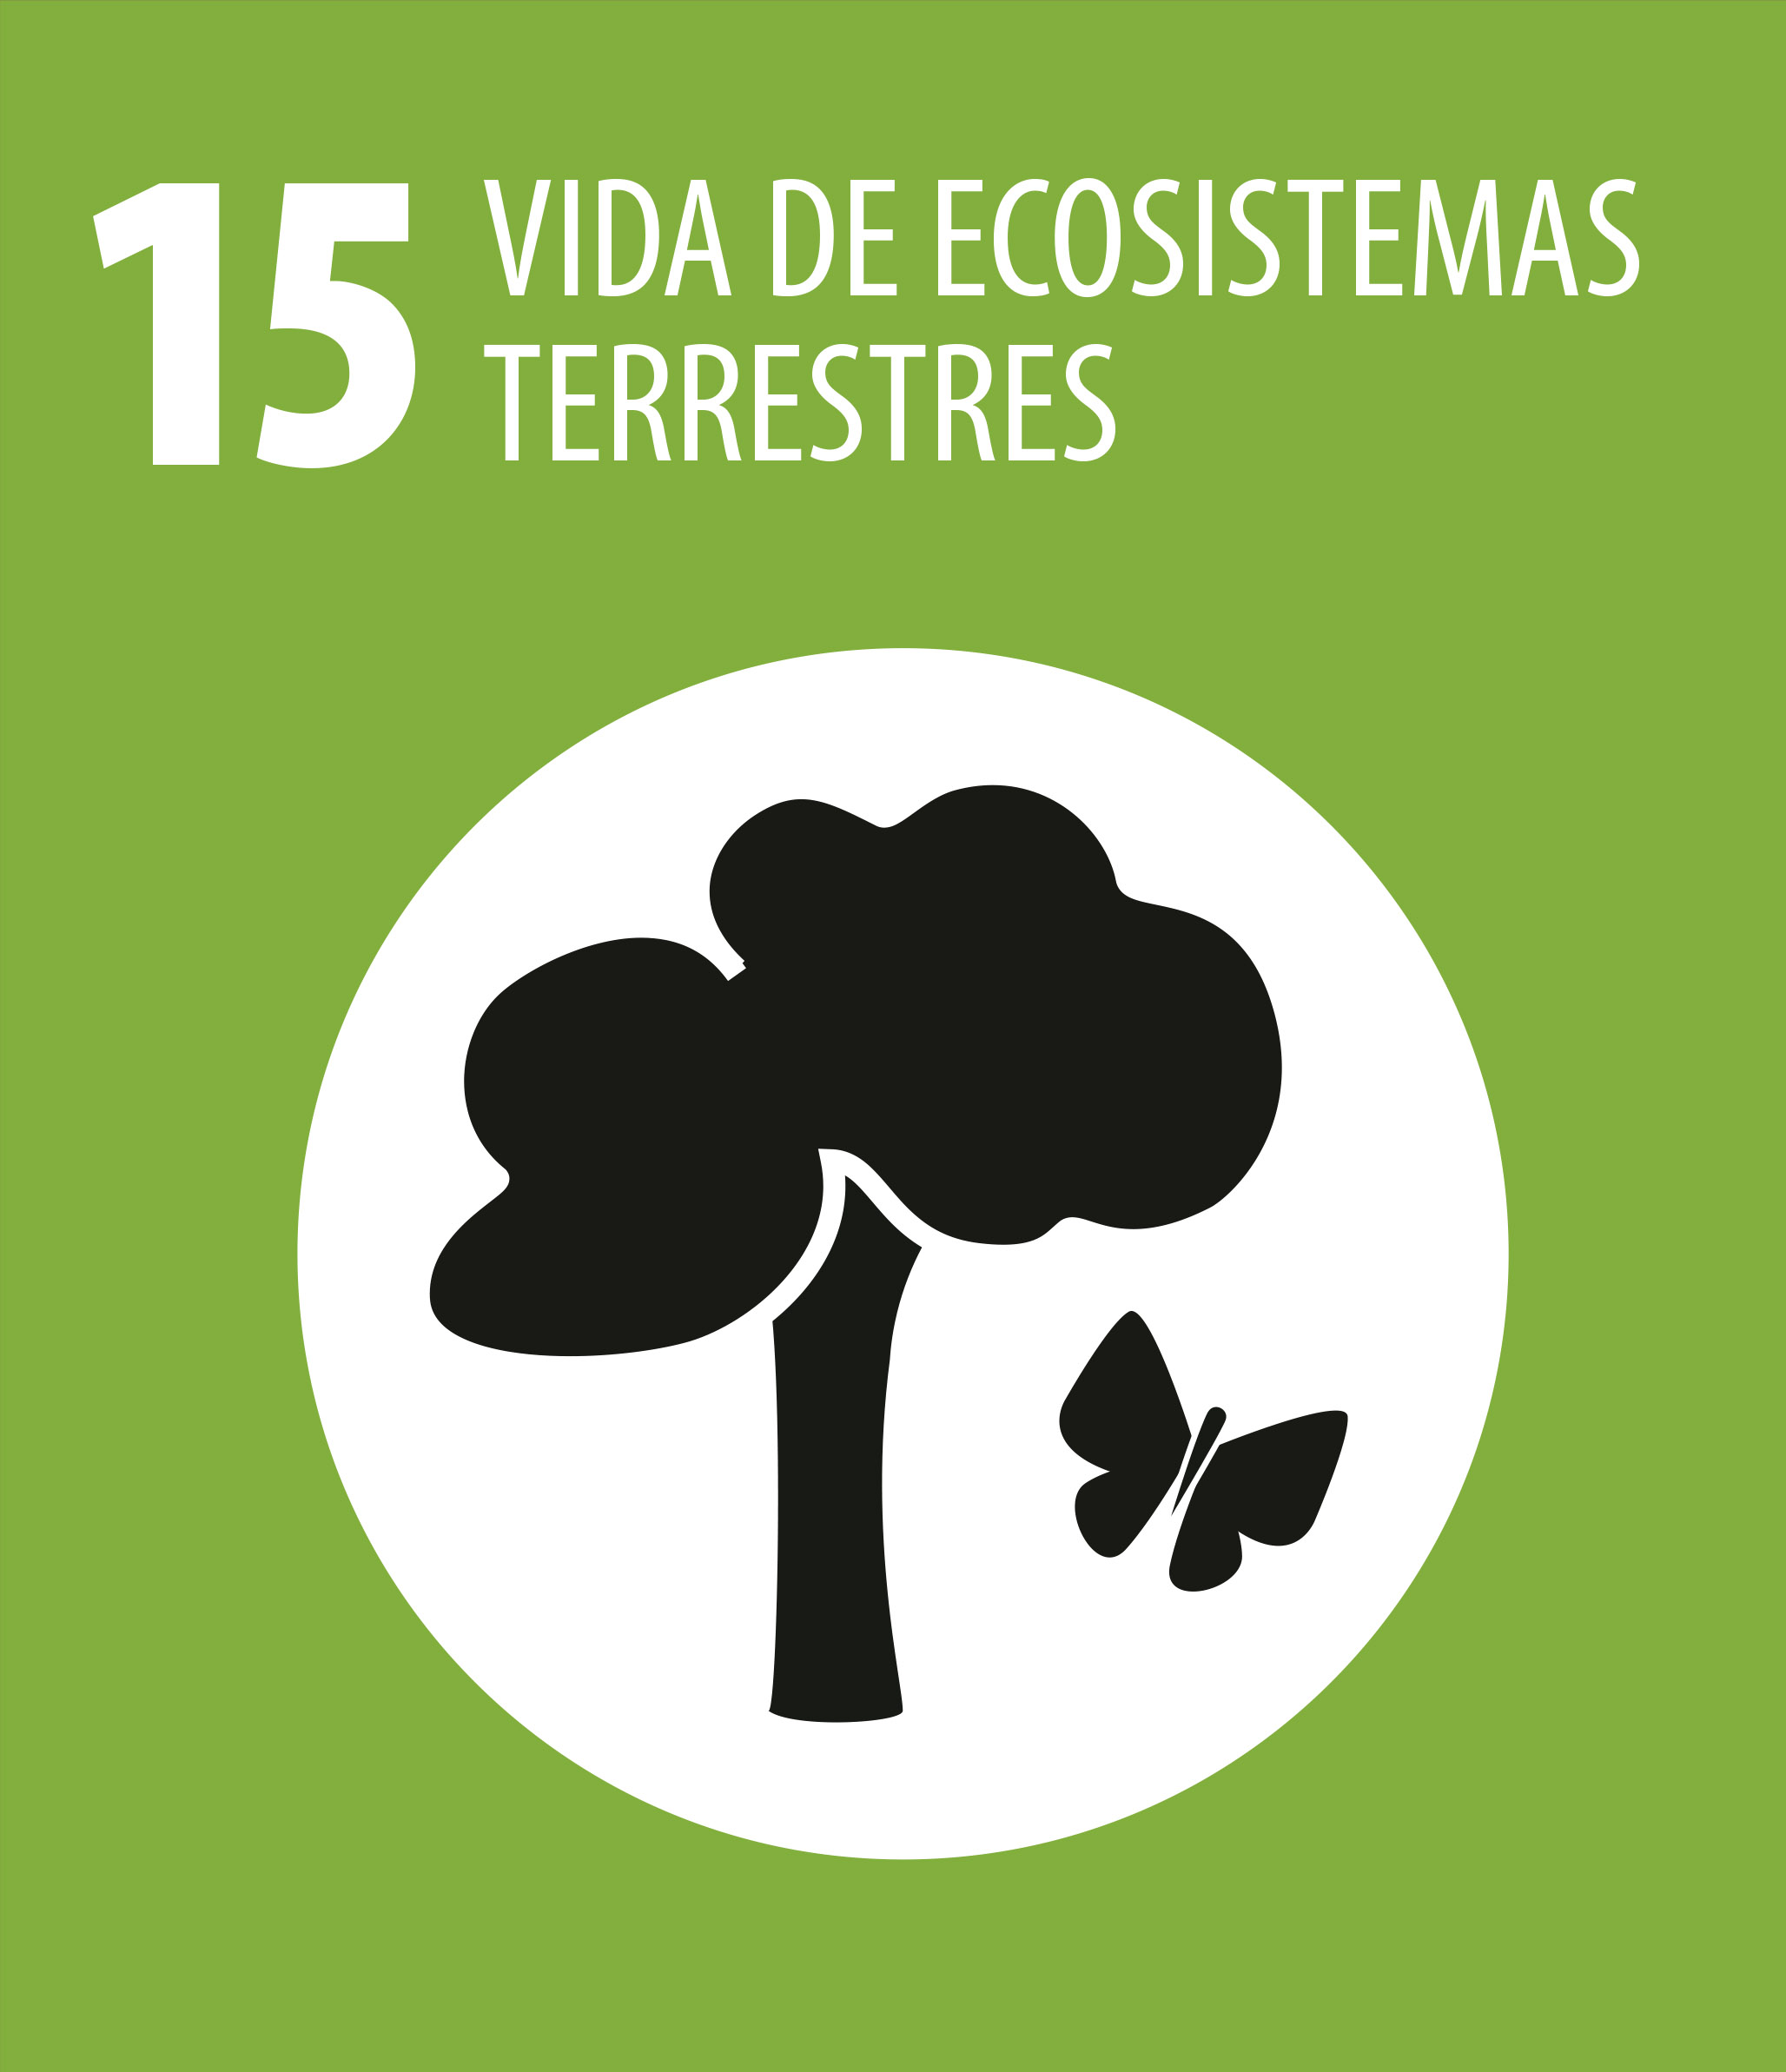 ODS 15 Vida ecosistemas terrestres